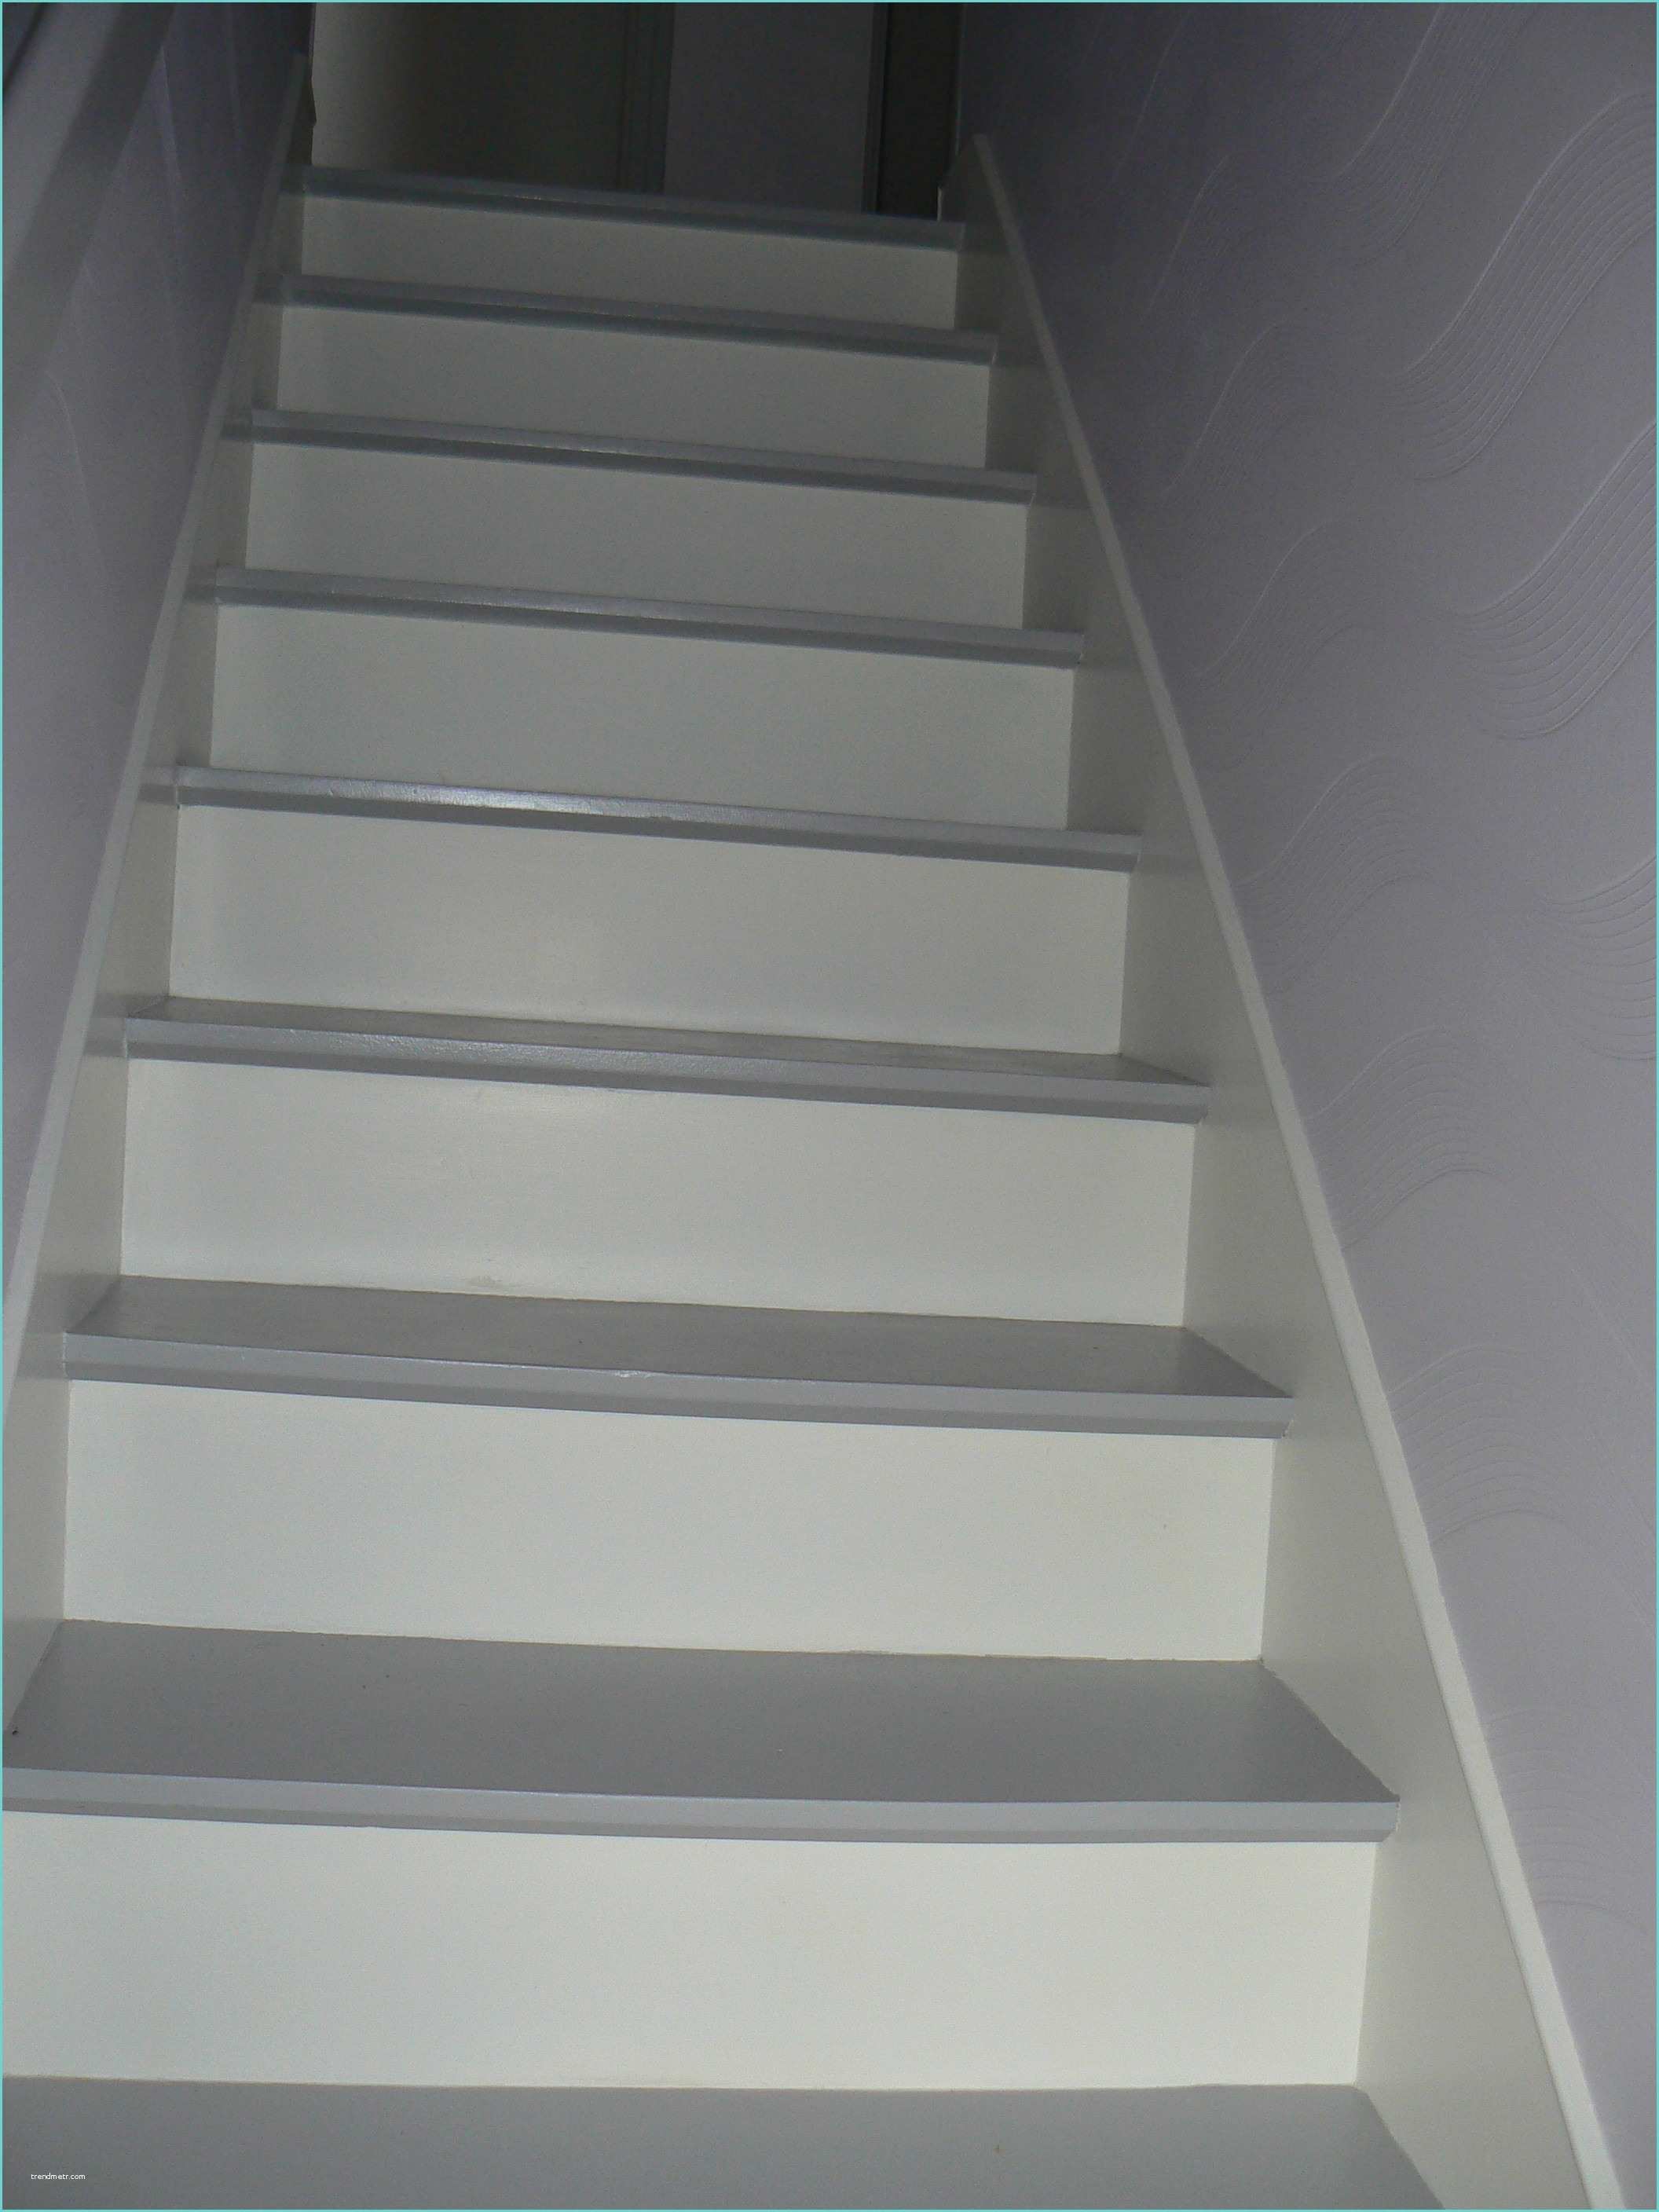 Escalier Peint 2 Couleurs Escaliers Peints En Gris Avec Good Escalier Bois Blanc Et